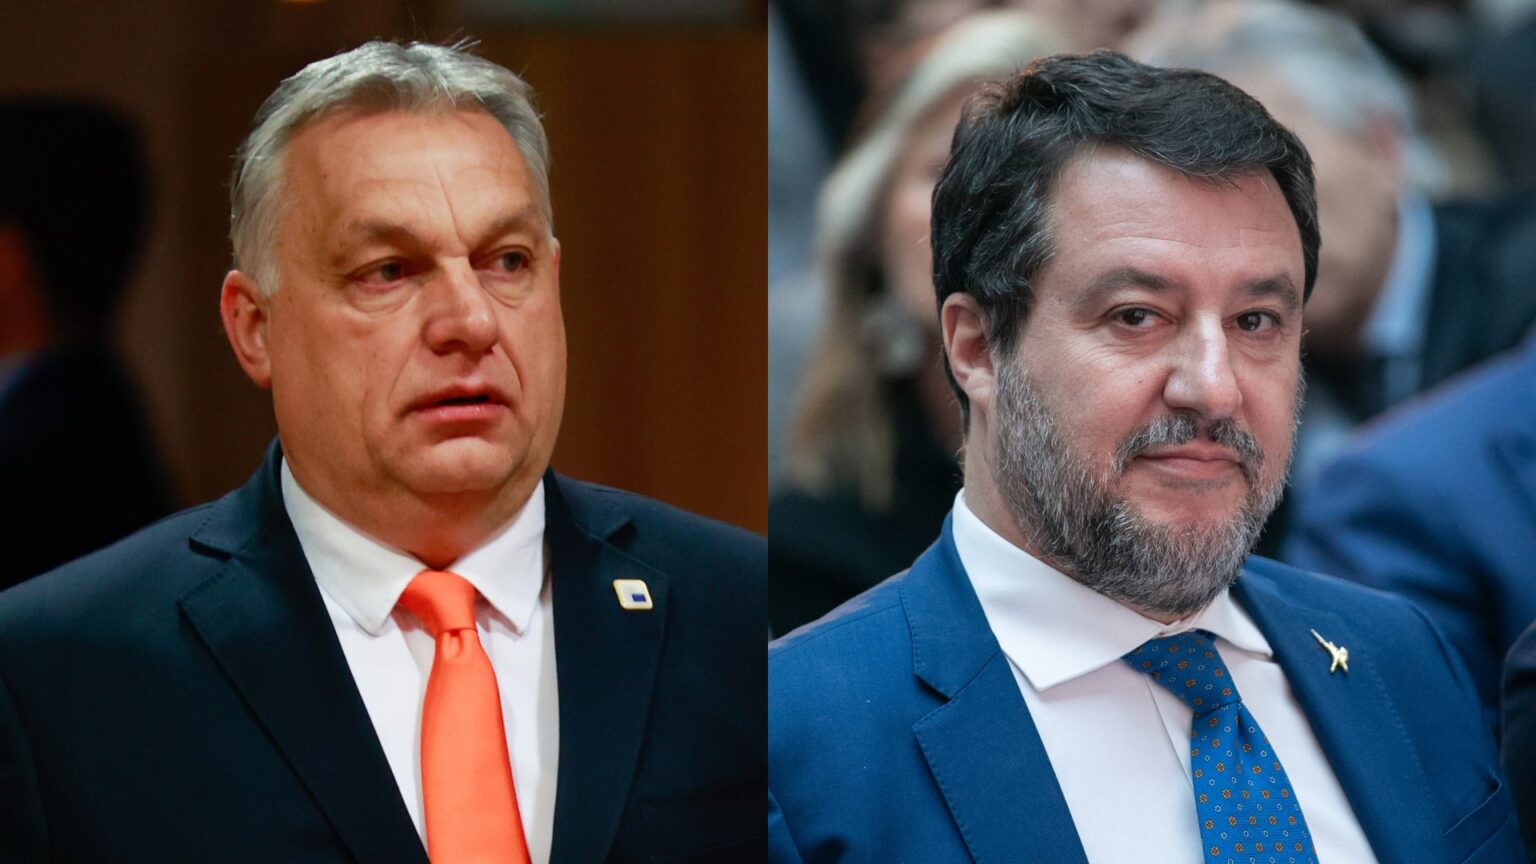 Viktor Orban e Matteo Salvini